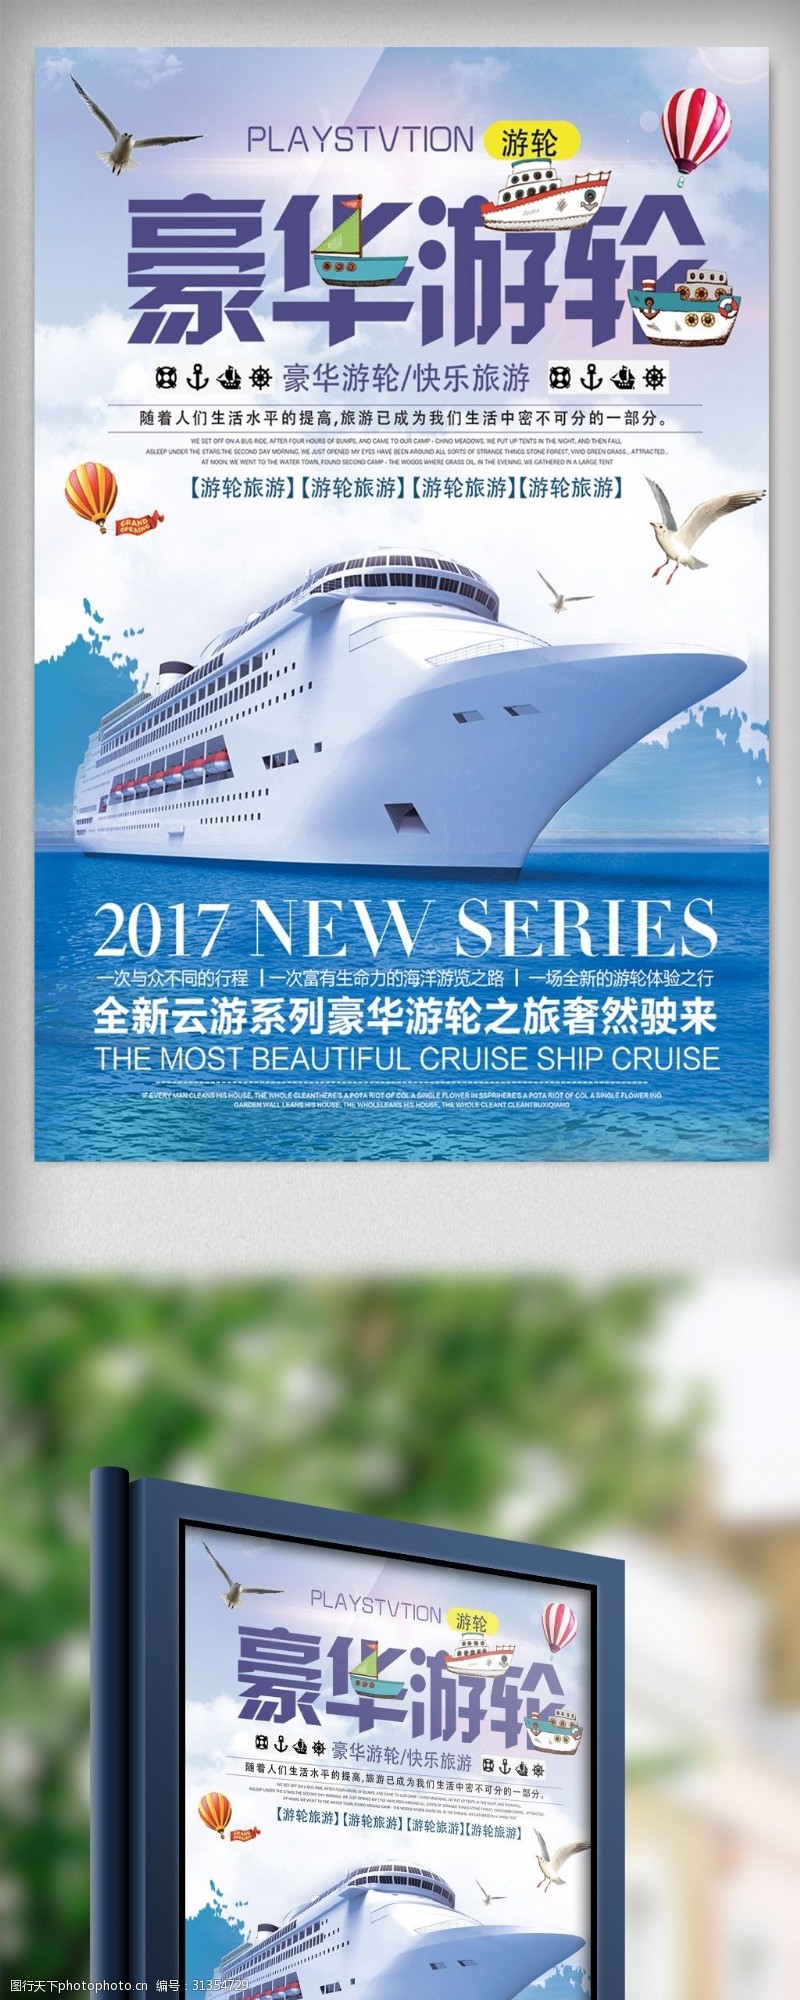 日本旅游广告时尚简洁豪华游轮旅游海报设计